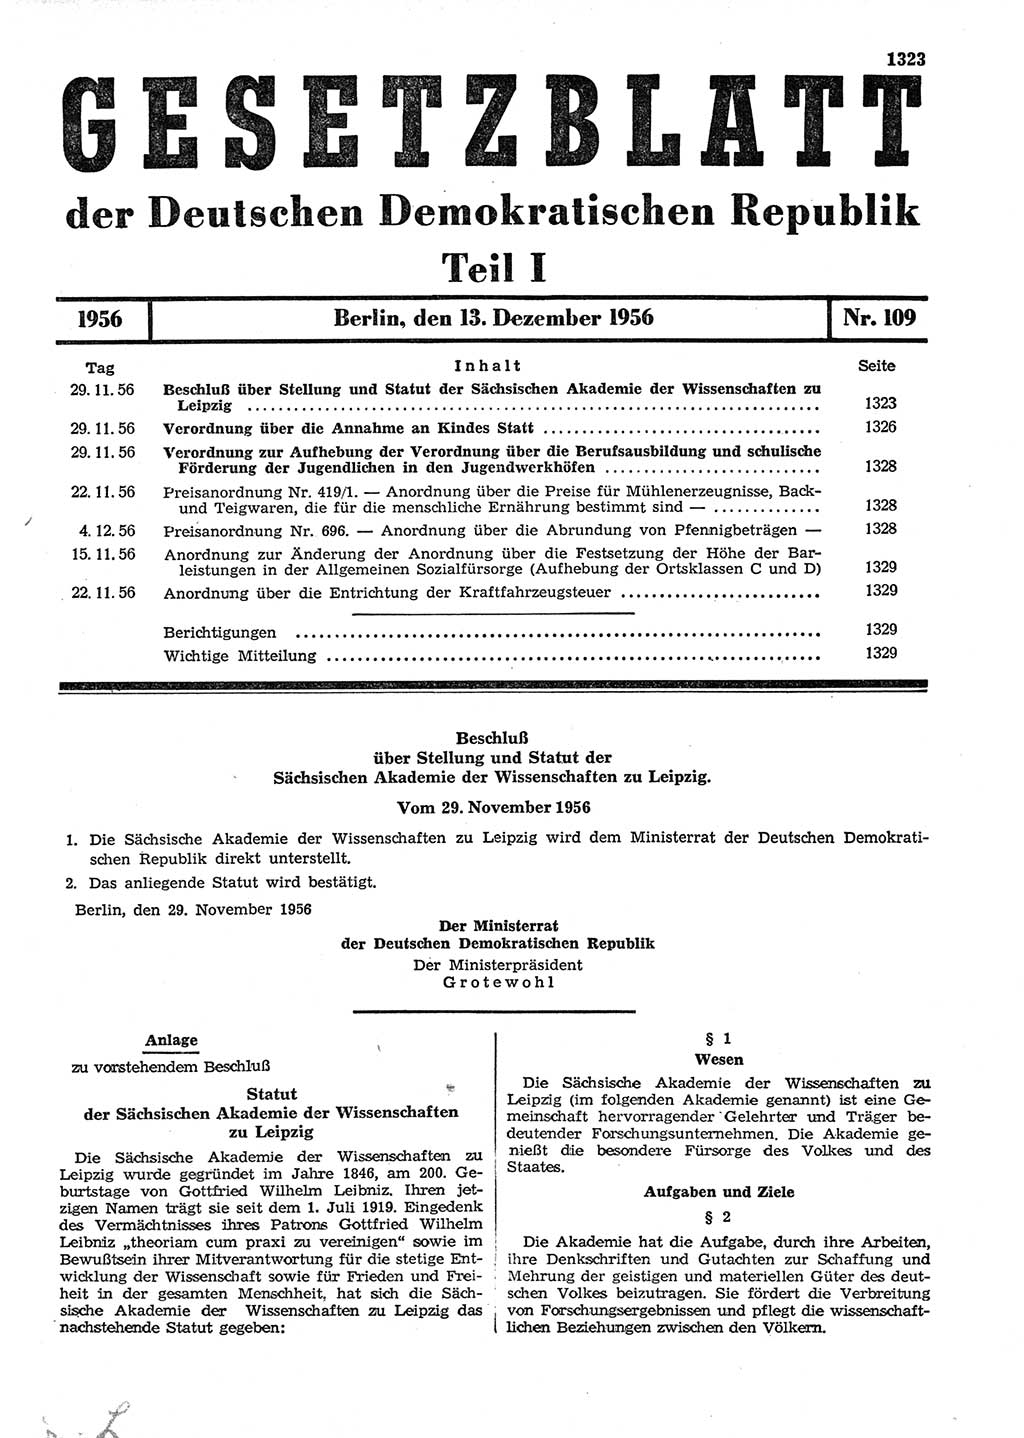 Gesetzblatt (GBl.) der Deutschen Demokratischen Republik (DDR) Teil Ⅰ 1956, Seite 1323 (GBl. DDR Ⅰ 1956, S. 1323)